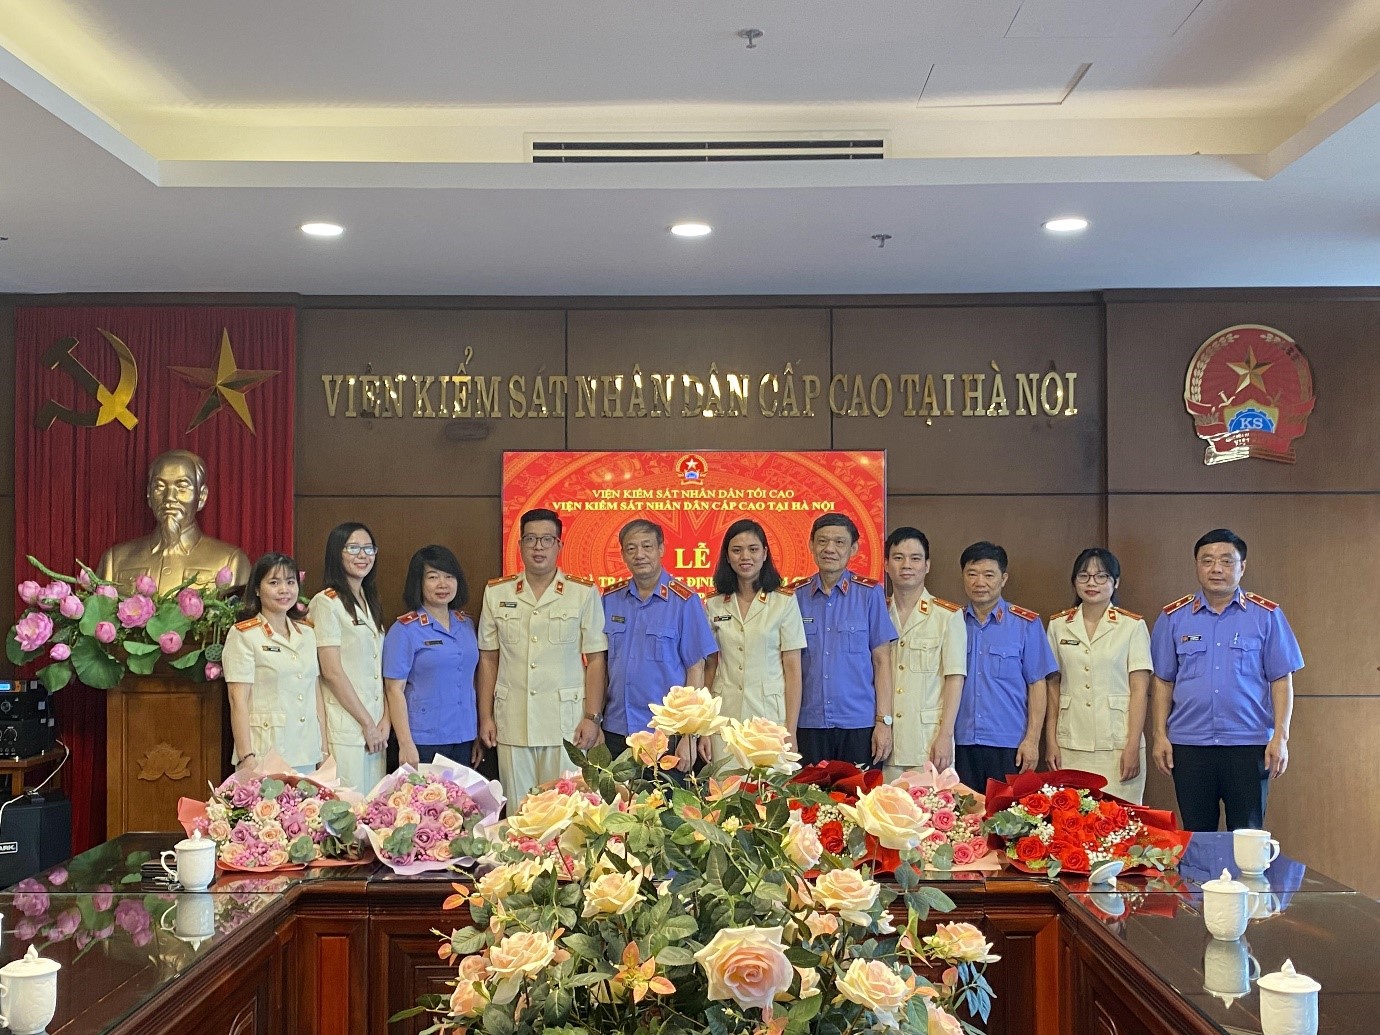 Viện kiểm sát nhân dân cấp cao tại Hà Nội tổ chức Lễ công bố và trao quyết định bổ nhiệm chức danh Kiểm sát viên trung cấp, Kiểm sát viên sơ cấp